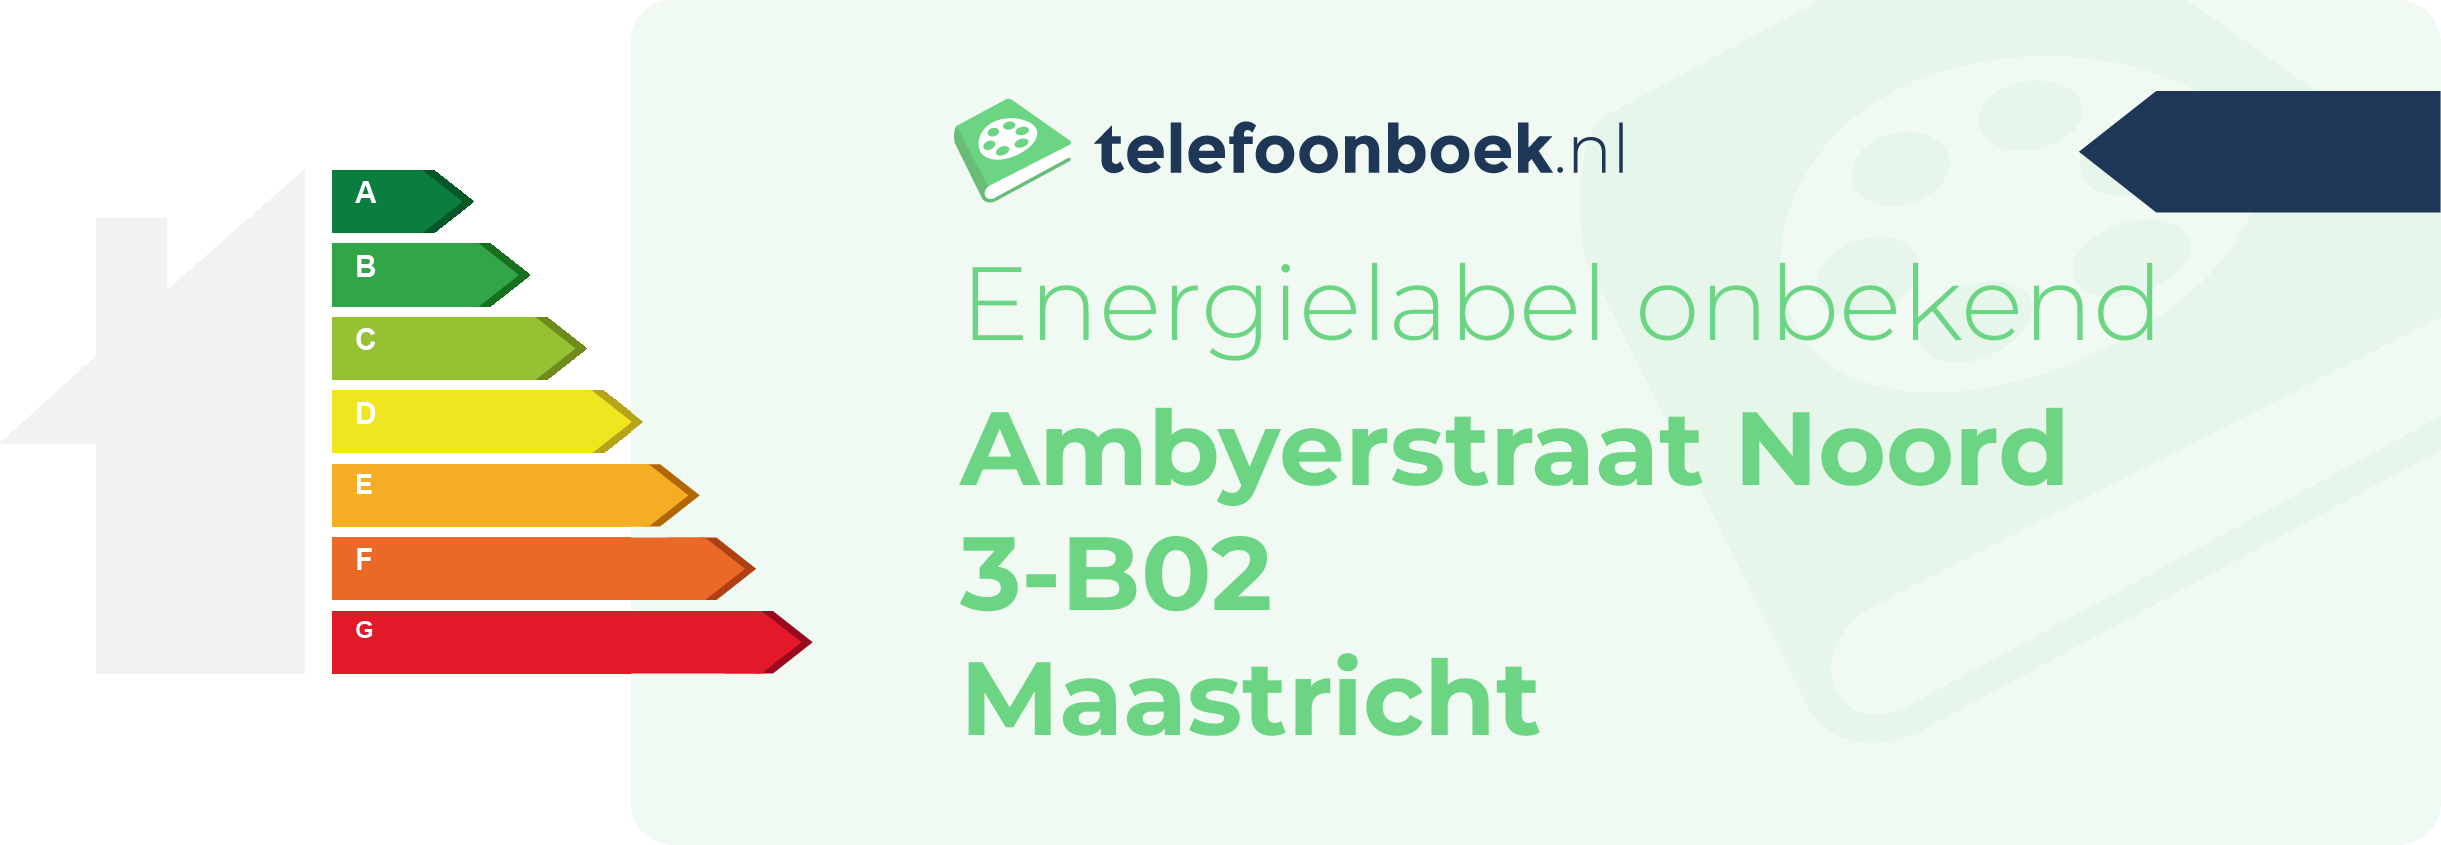 Energielabel Ambyerstraat Noord 3-B02 Maastricht